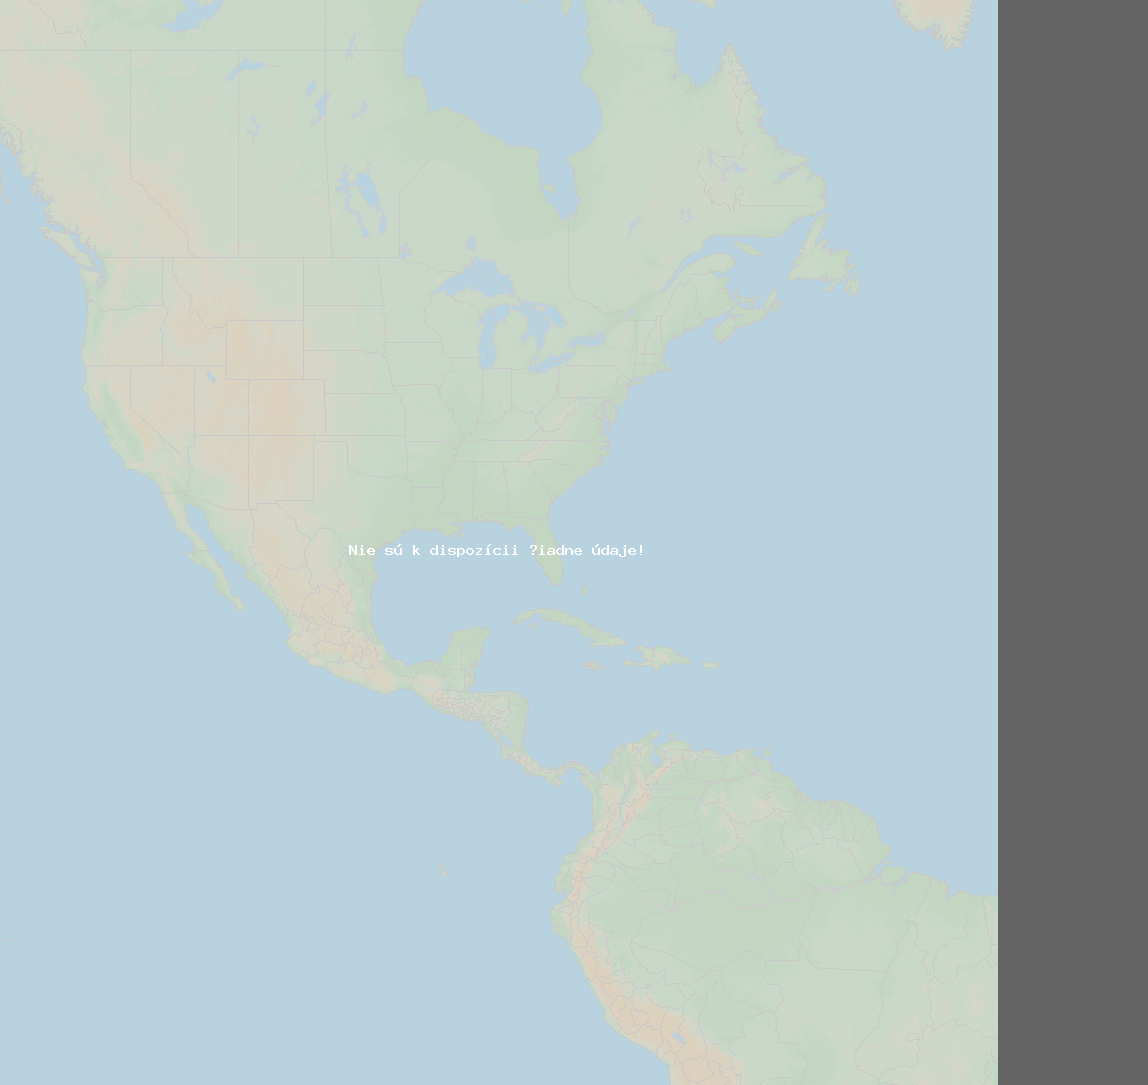 Pomer bleskov (Stanica Saratoga) North America 2024 